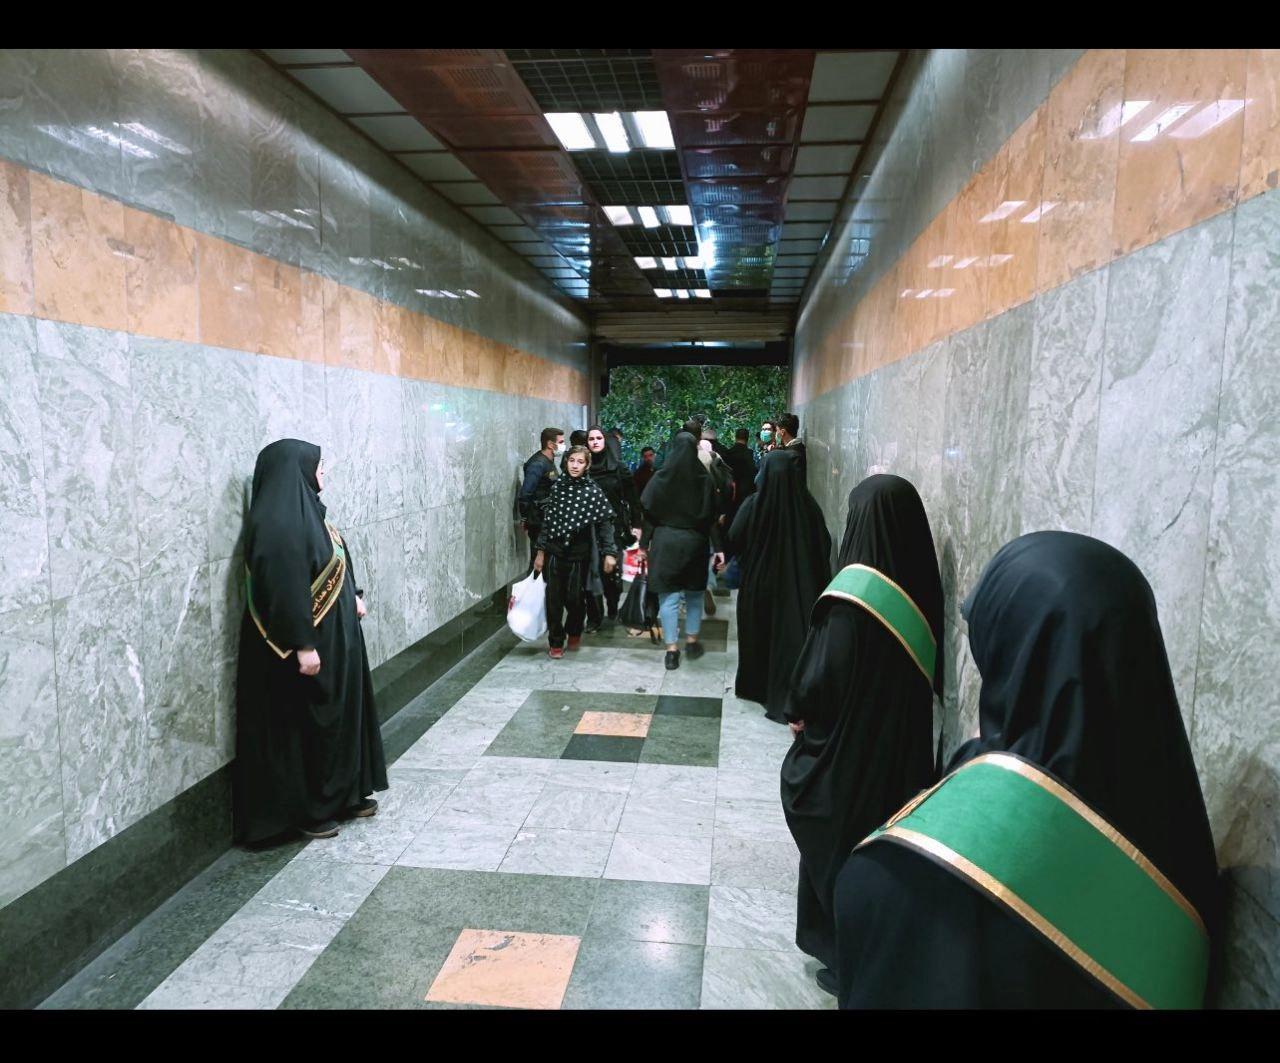 تونل ماموران بهشت در زیر زمین های تهران /اتفاقاتی که برای دختران و زنان در متروی تئاتر شهر می افتد